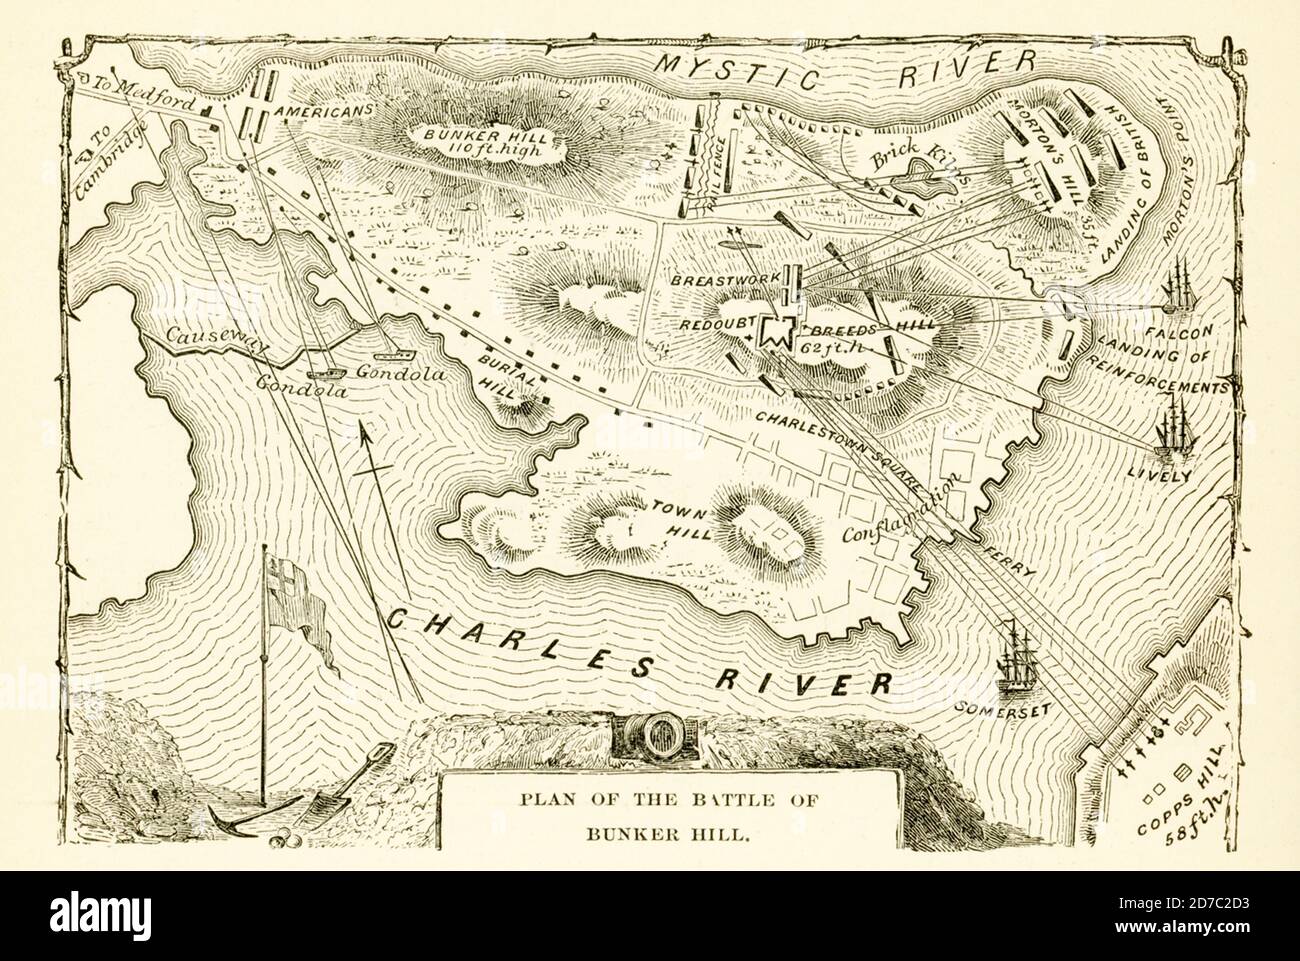 Plan der Schlacht am Bunker Hill. Am 17. Juni 1775, zu Beginn des Revolutionskrieges (1775-83), besiegten die Briten die Amerikaner in der Schlacht von Bunker Hill in Massachusetts. Trotz ihres Verlustes haben die unerfahrenen Kolonialmächte dem Feind erhebliche Verluste zugefügt, und die Schlacht gab ihnen während der Belagerung von Boston (April 1775-März 1776) einen wichtigen Vertrauensschub. Obwohl gemeinhin als die Schlacht von Bunker Hill bezeichnet, die meisten der Kämpfe ereigneten sich auf nahe gelegenen Breed's Hill. Stockfoto